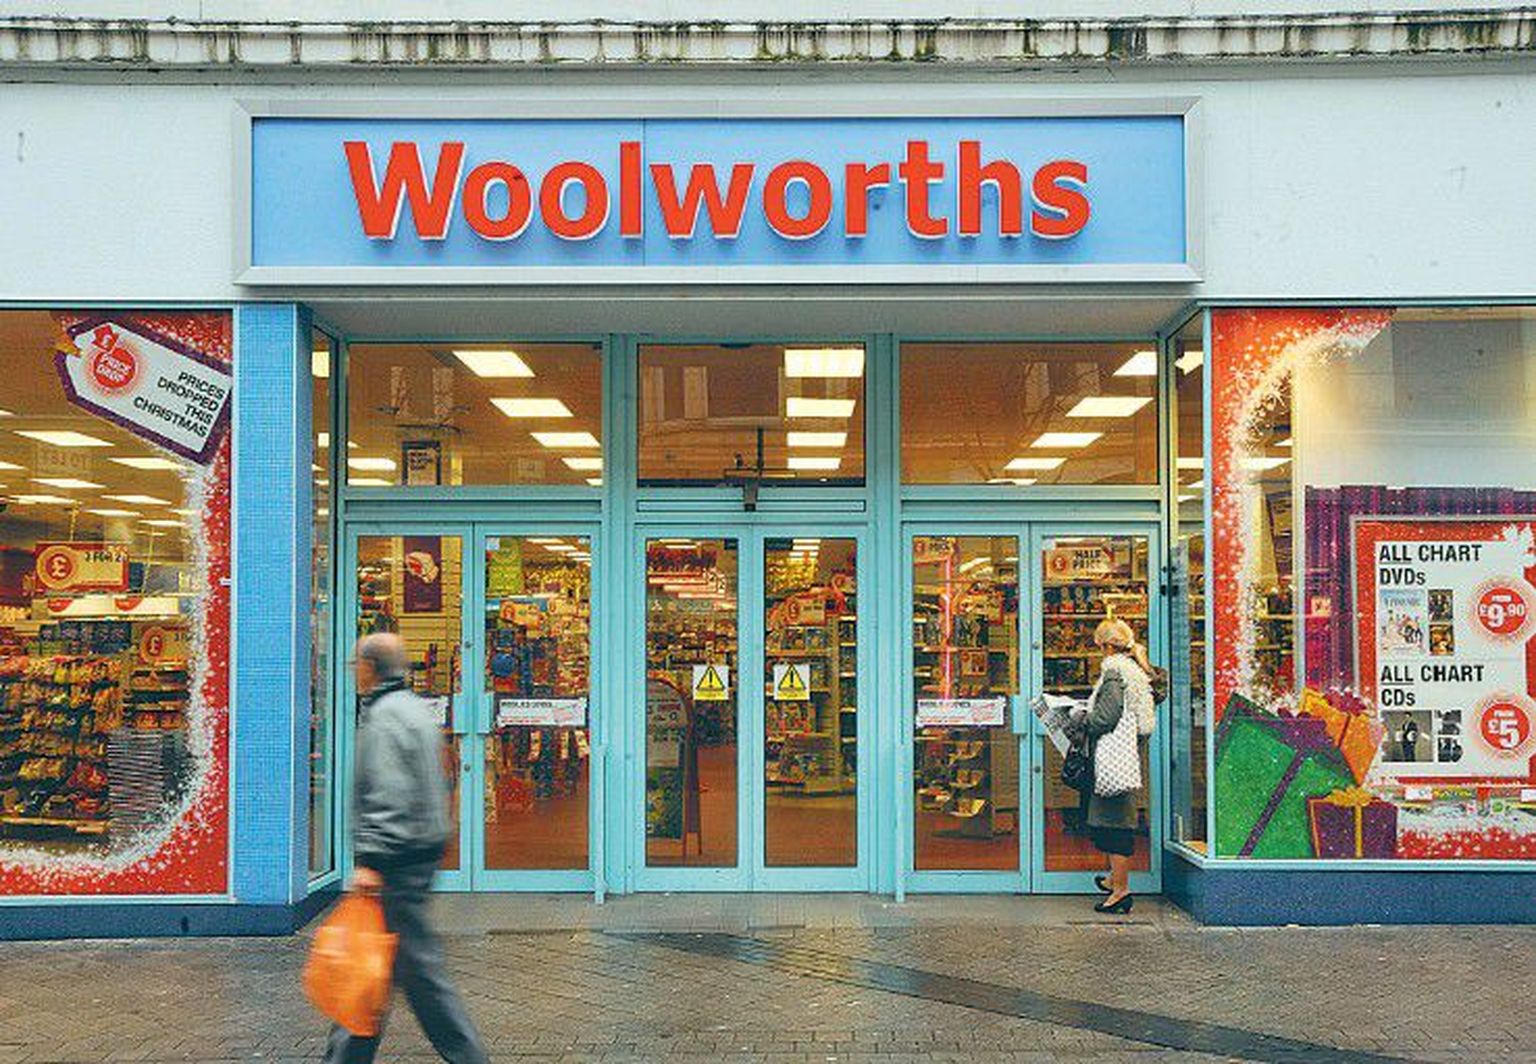 Suurbritannia jahtuv majandus on viinud riigi ühe vanima kaubamajaketi Wool-worths pankroti äärele. Firma võlad on kasvanud nii suureks, et analüütikud ennustavad selle tegevuse peatset lõppu.